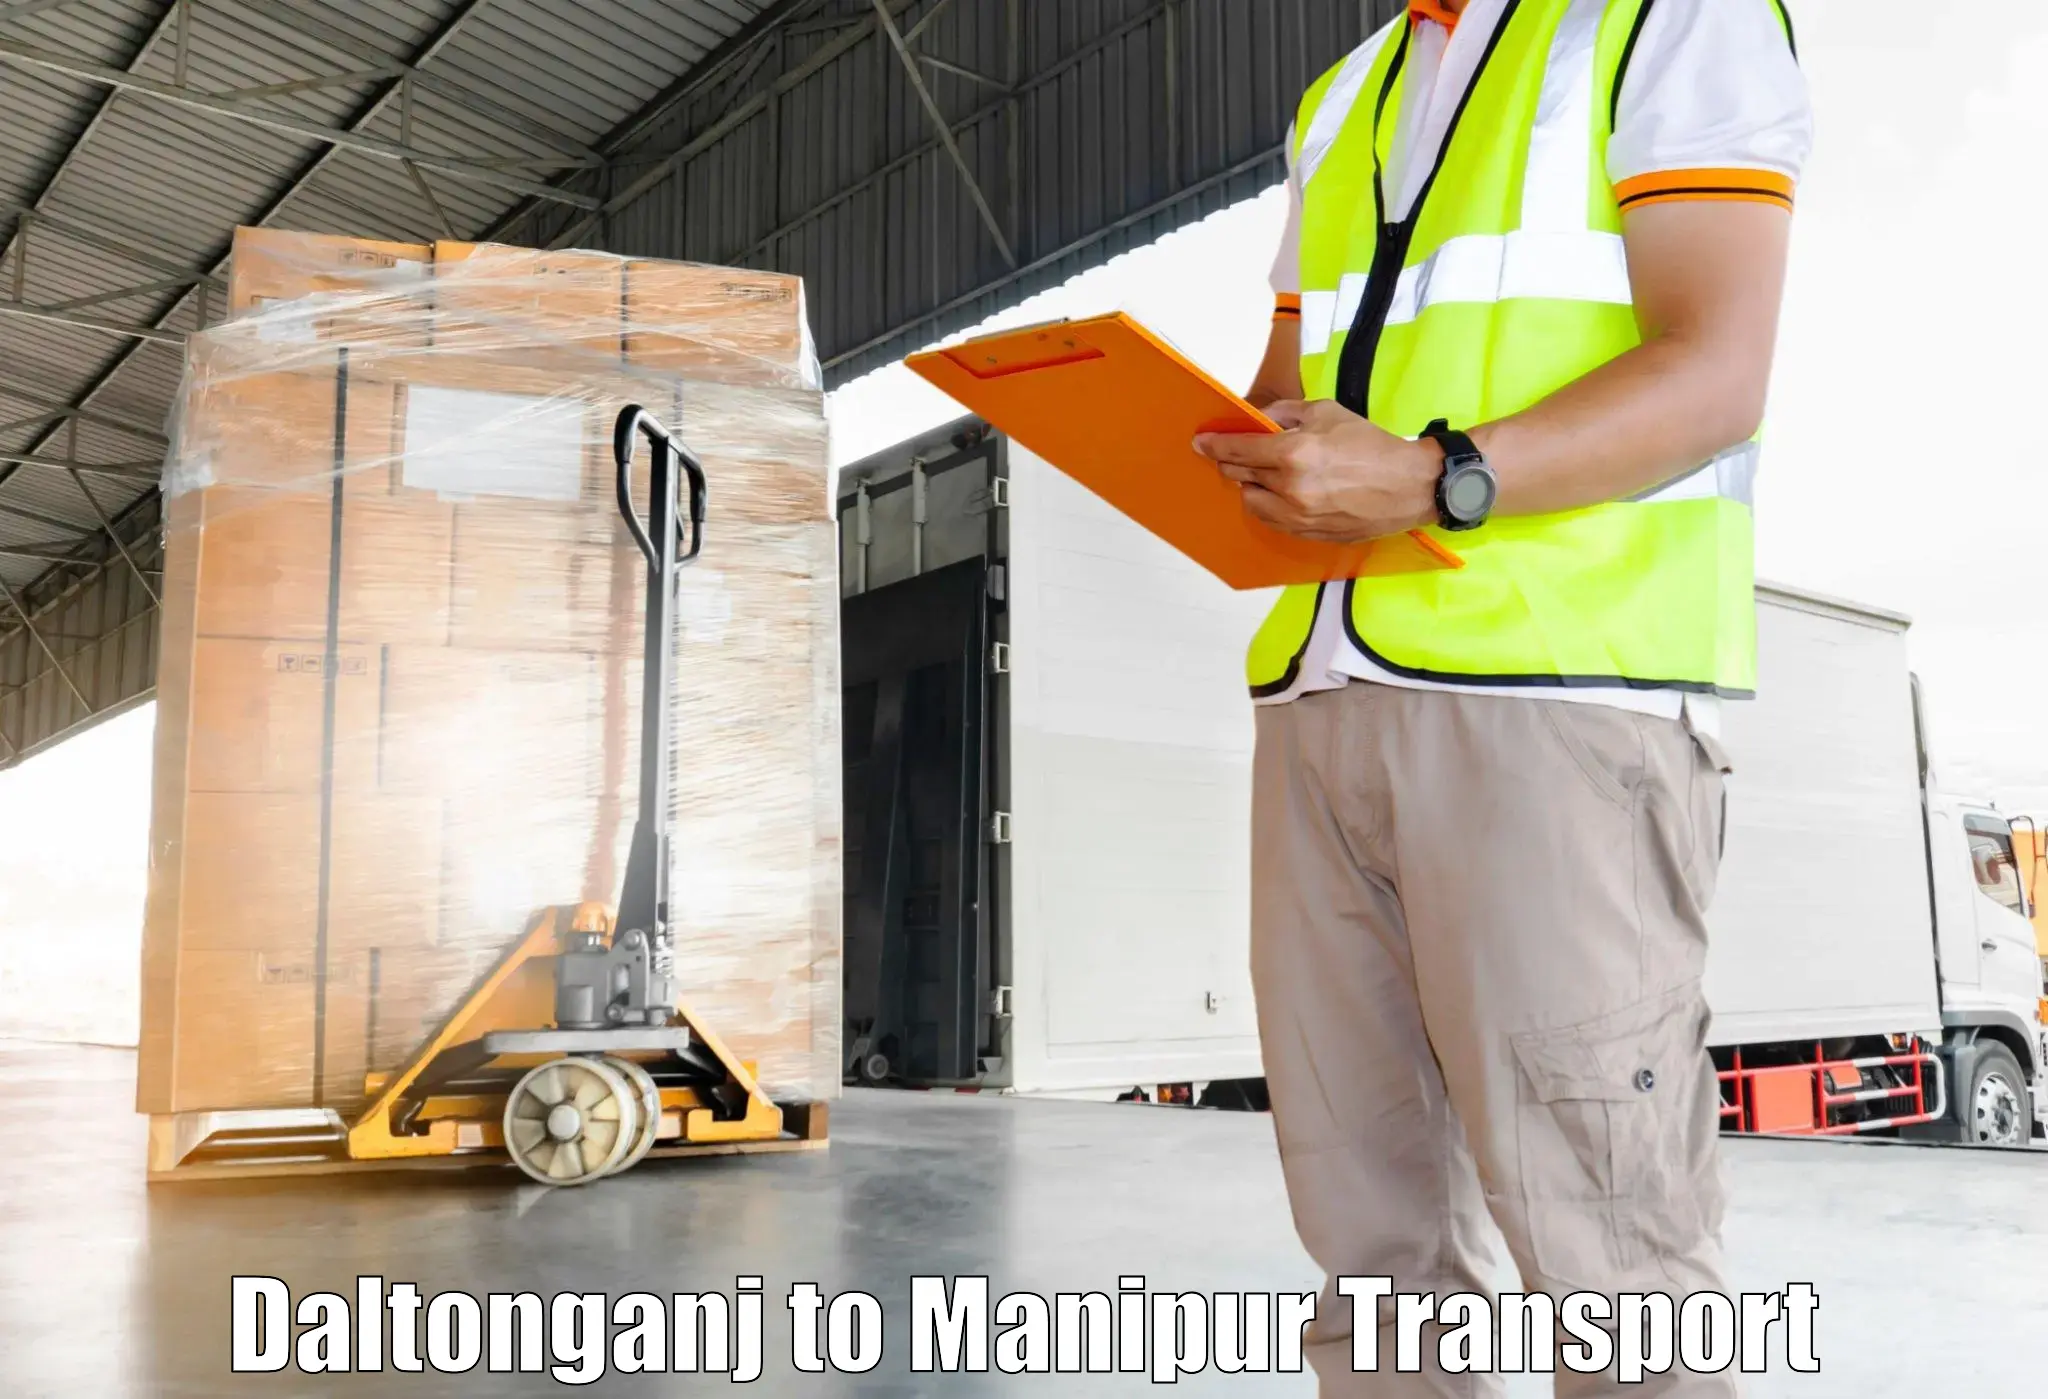 Lorry transport service Daltonganj to Senapati